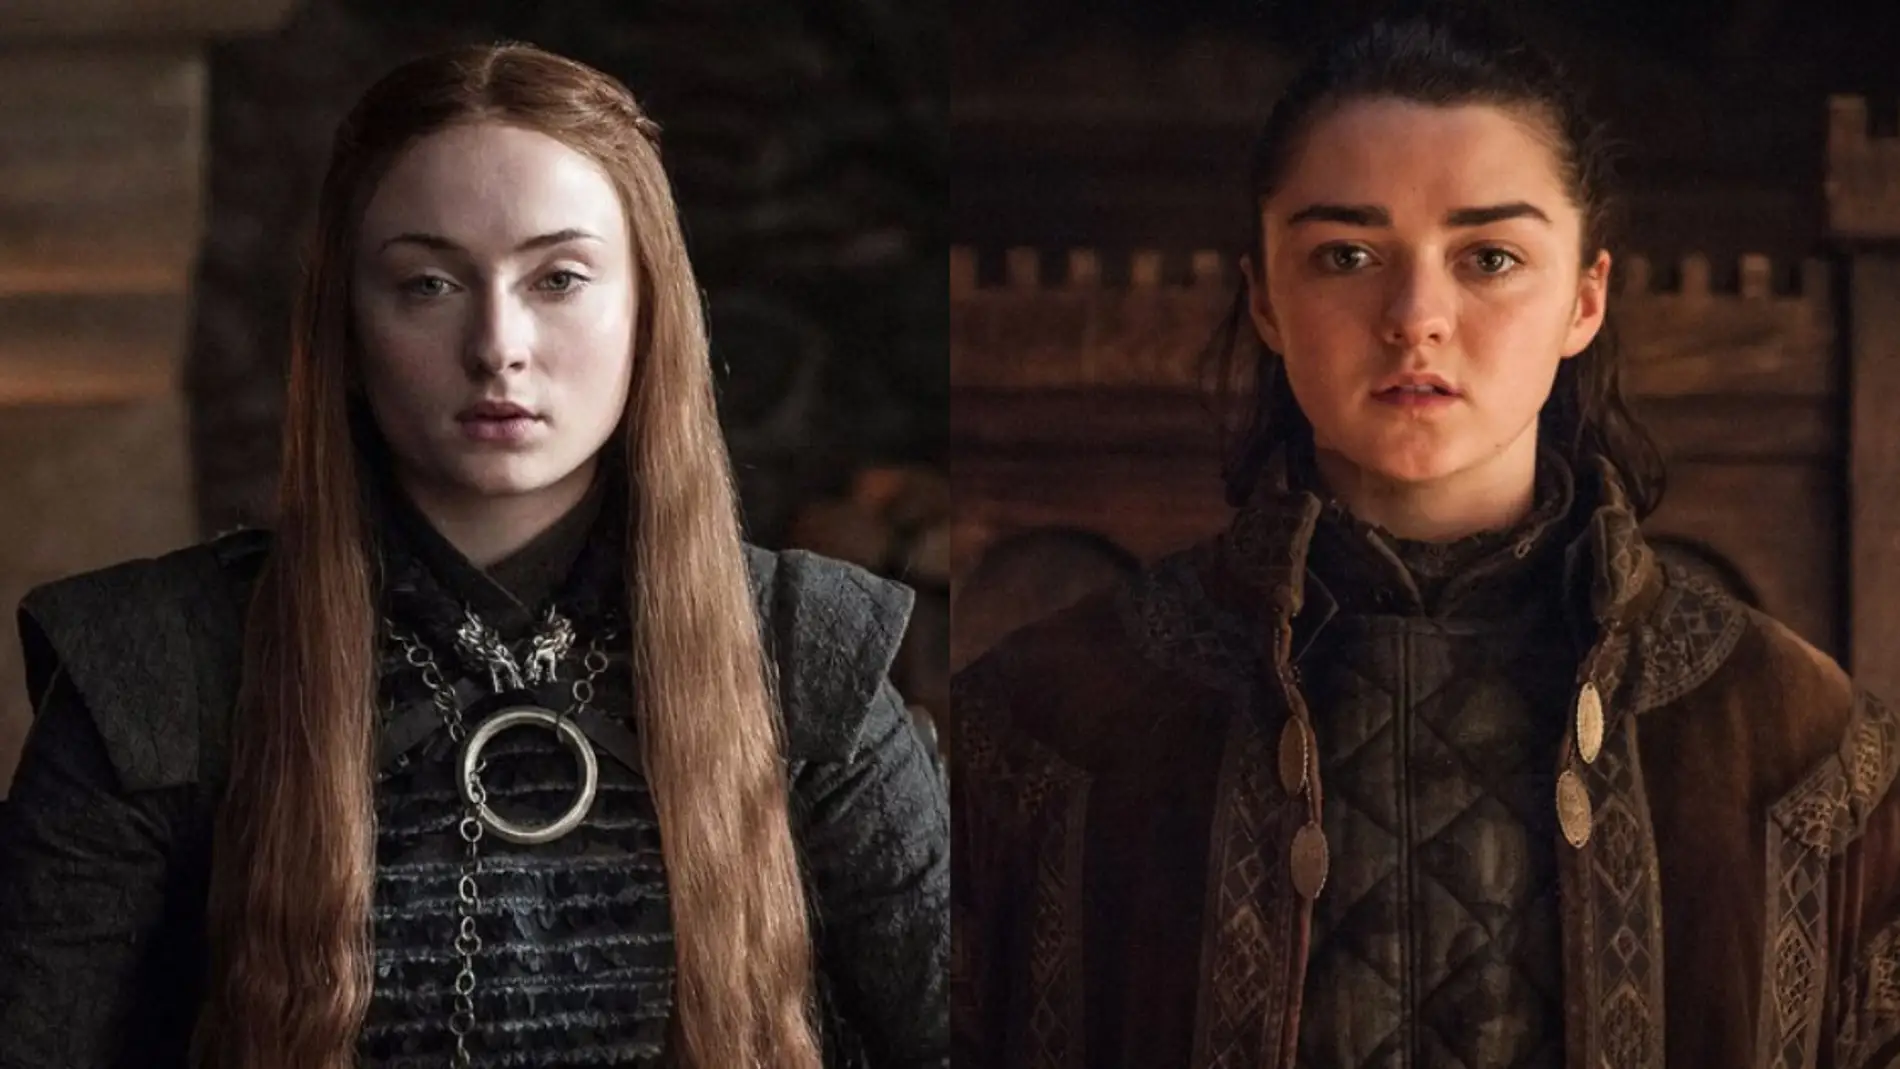 Sansa y Arya Stark en 'Juego de Tronos'